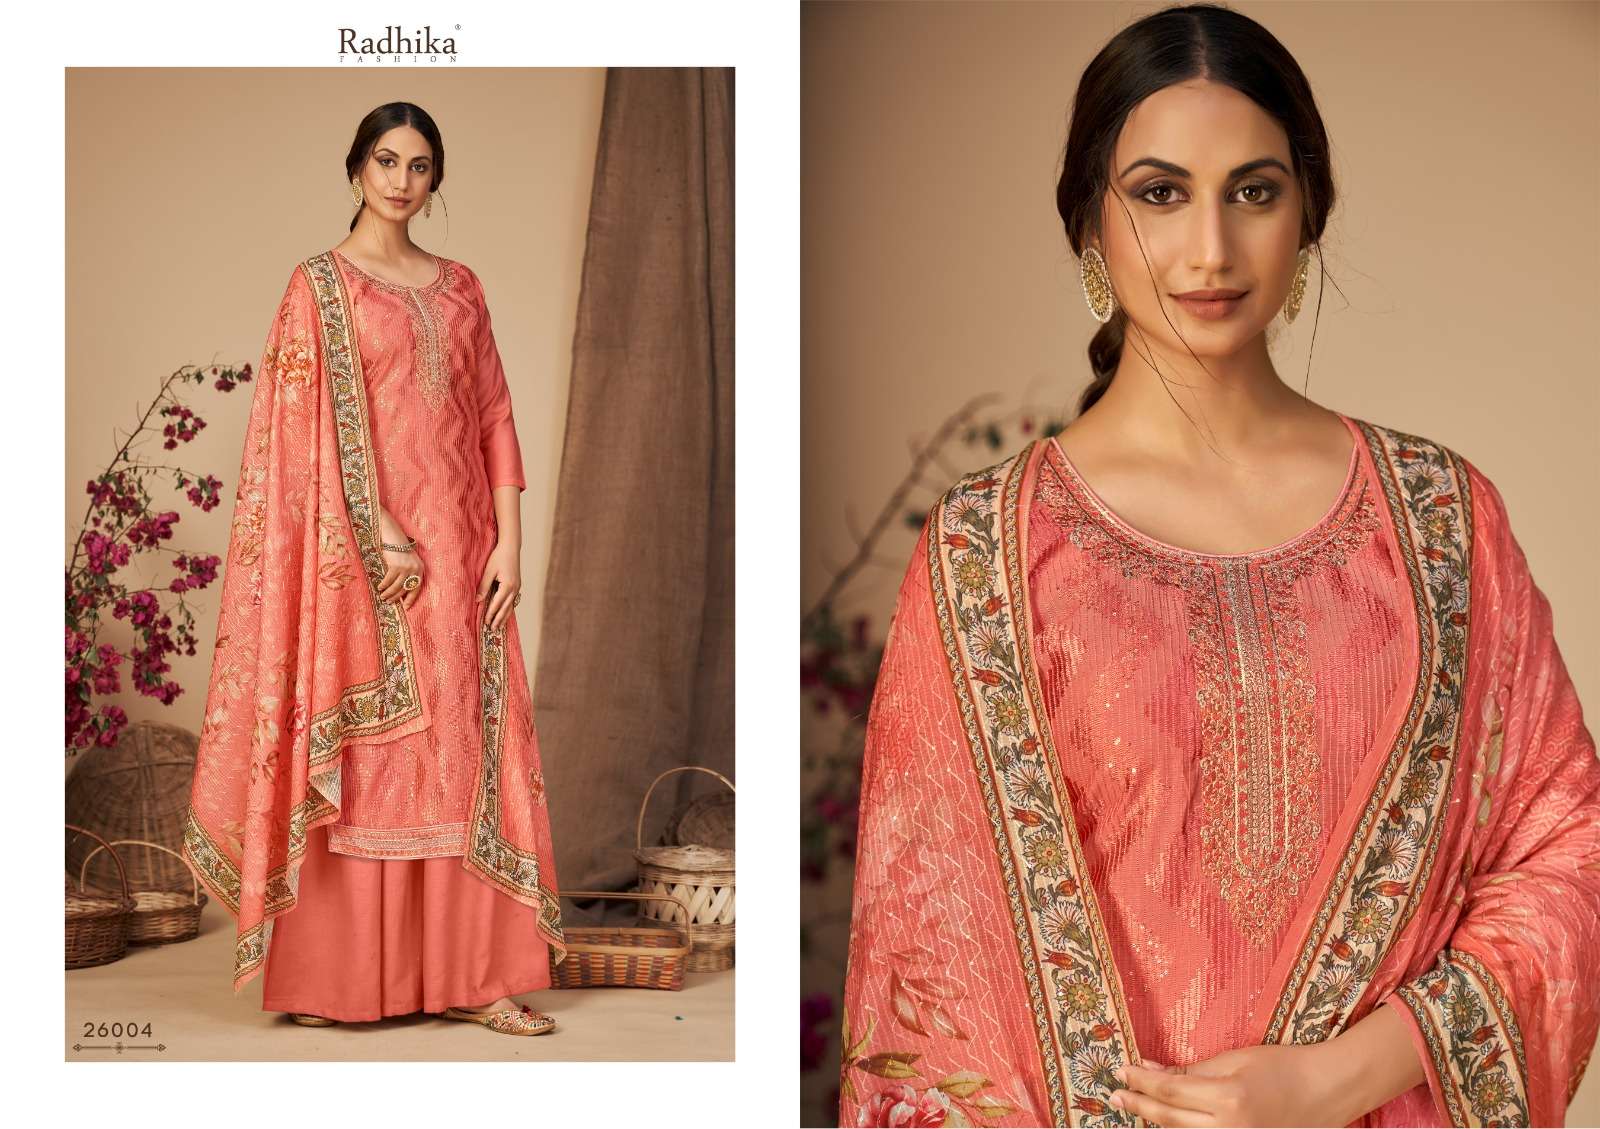 radhika fashion eliza 26001-26004 series indian designer salwar kameez latest catalogue surat